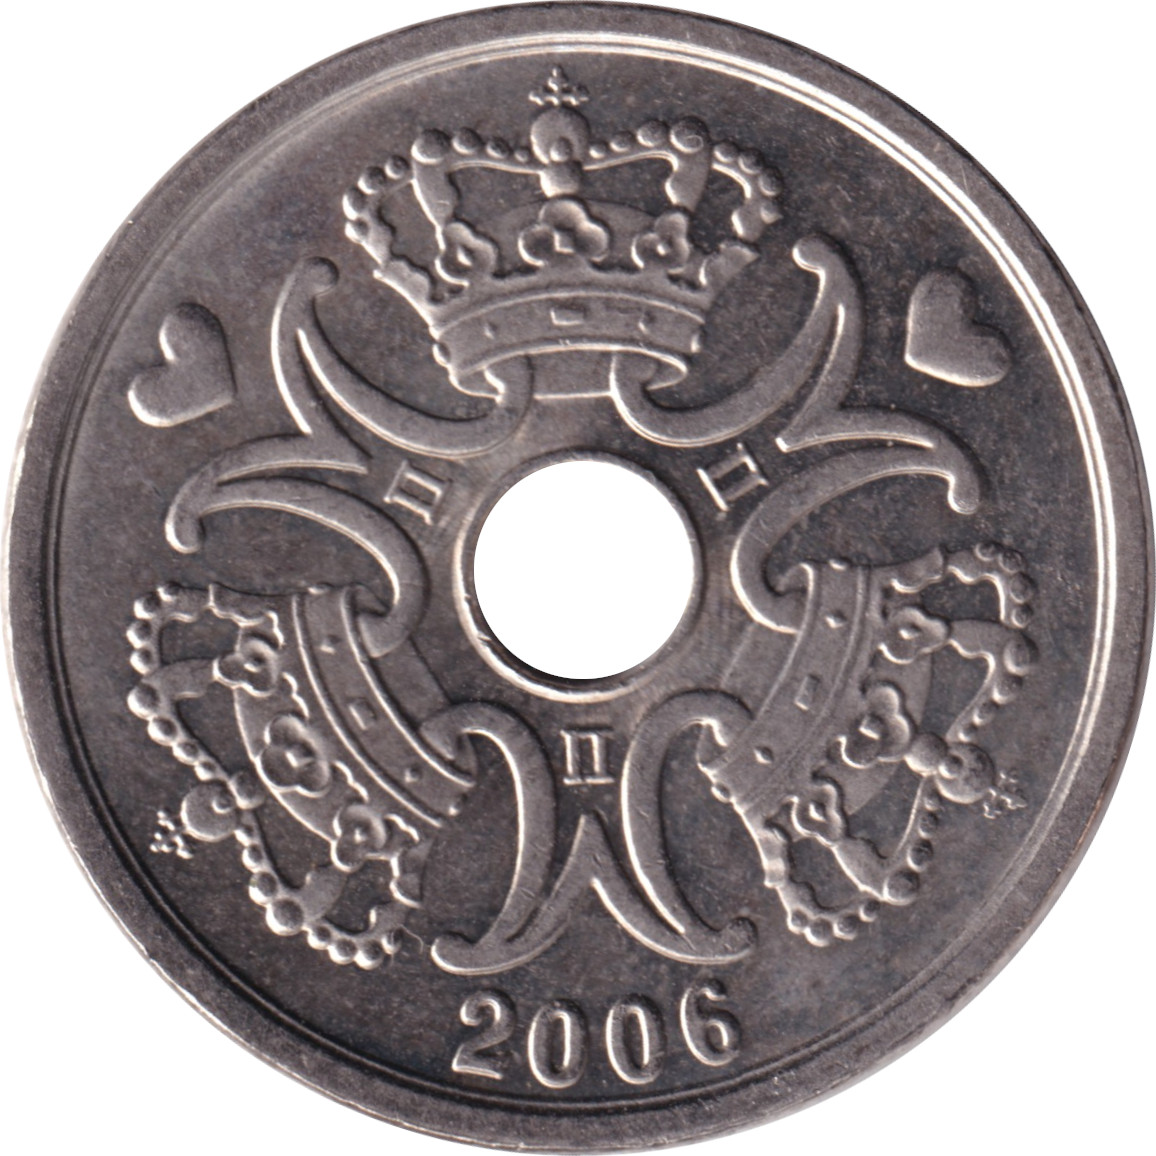 2 kroner - Margrethe II